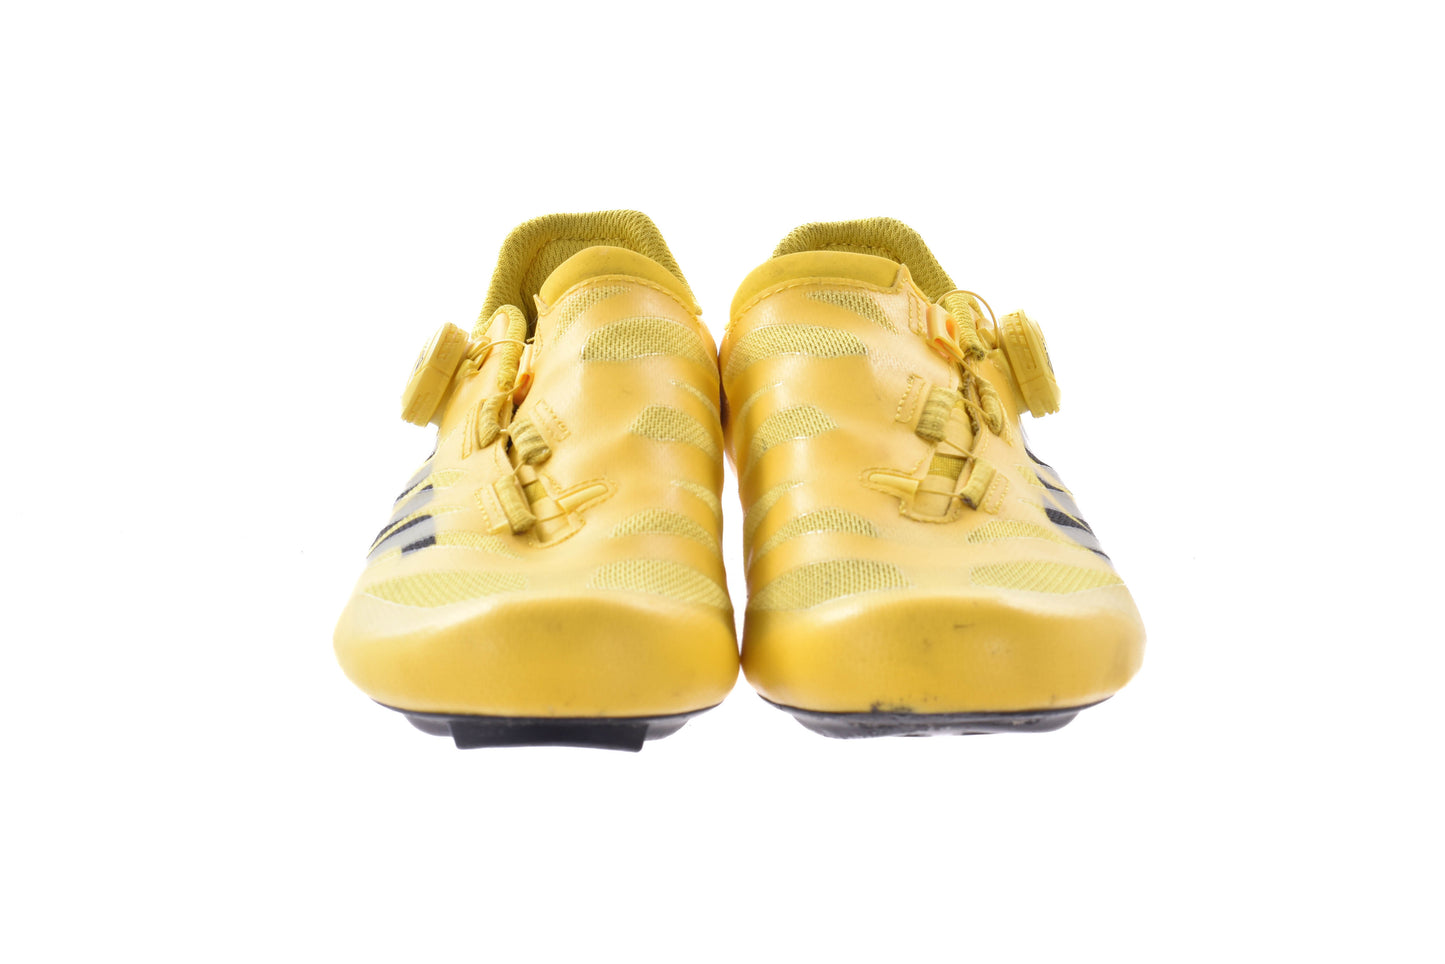 USED Mavic Cosmic SL Ultimate Shoes Yellow Size 7.5 US / 40.66 EU